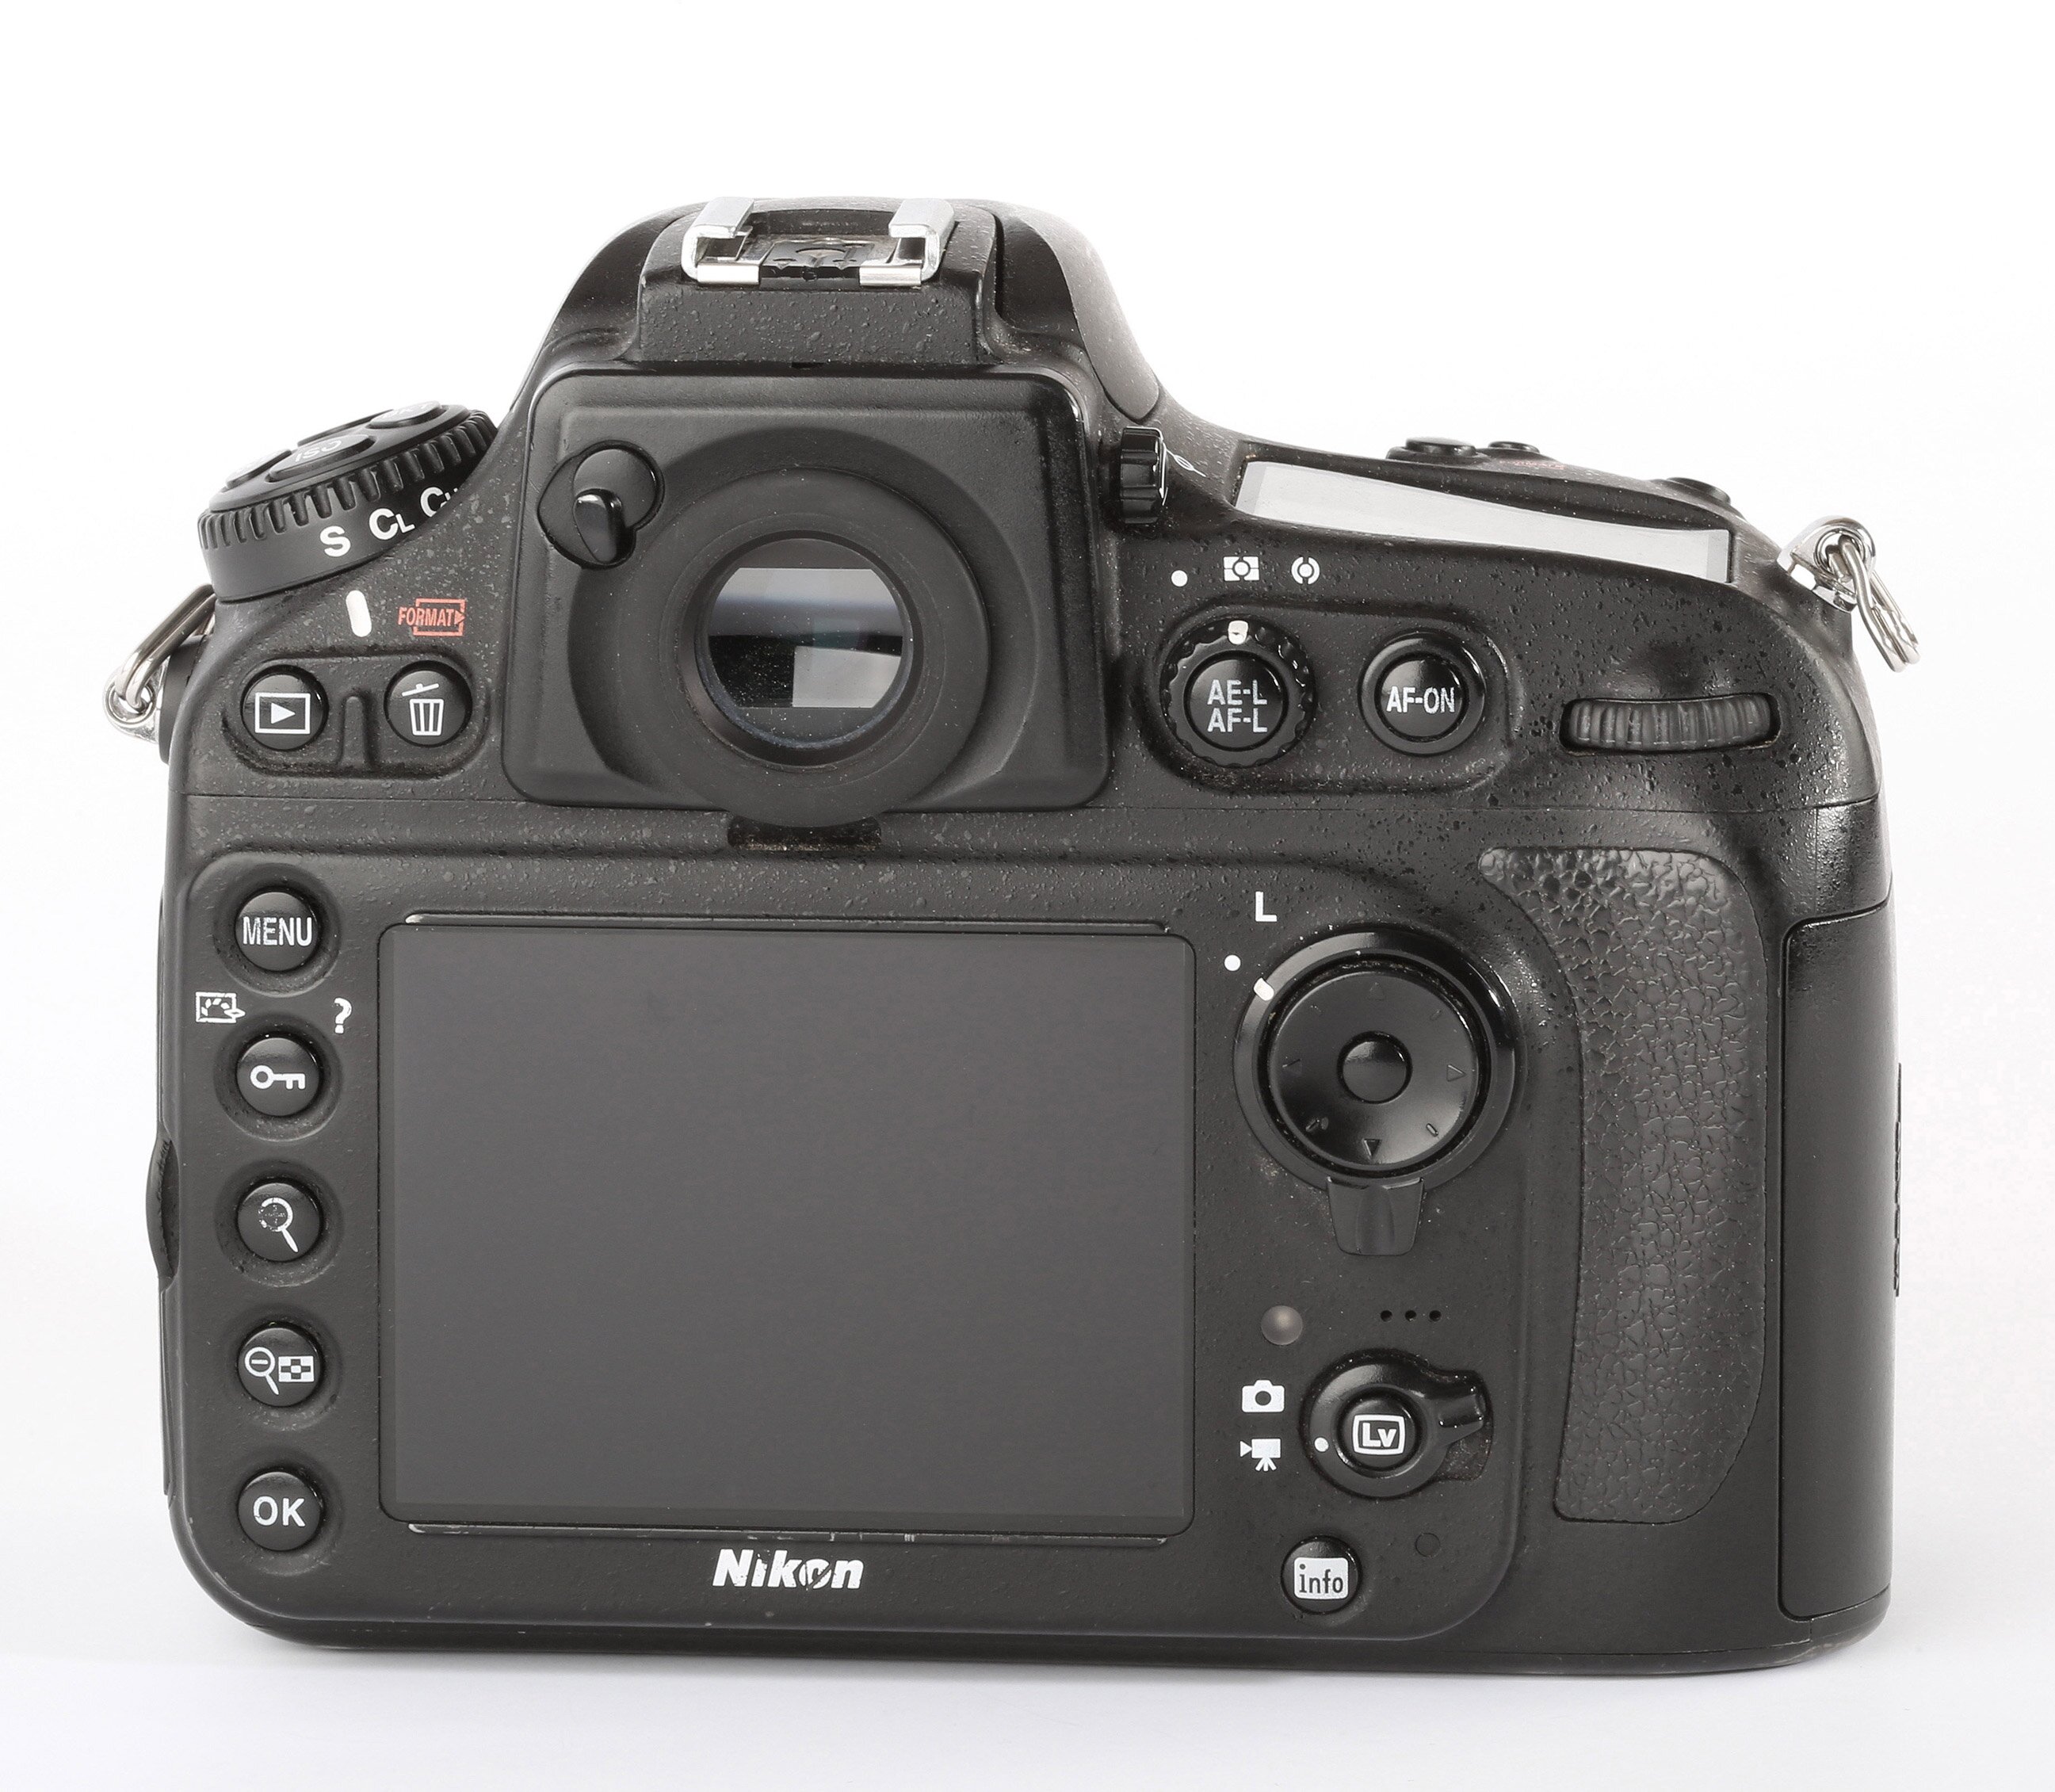 Nikon D800 106000 Auslösungen